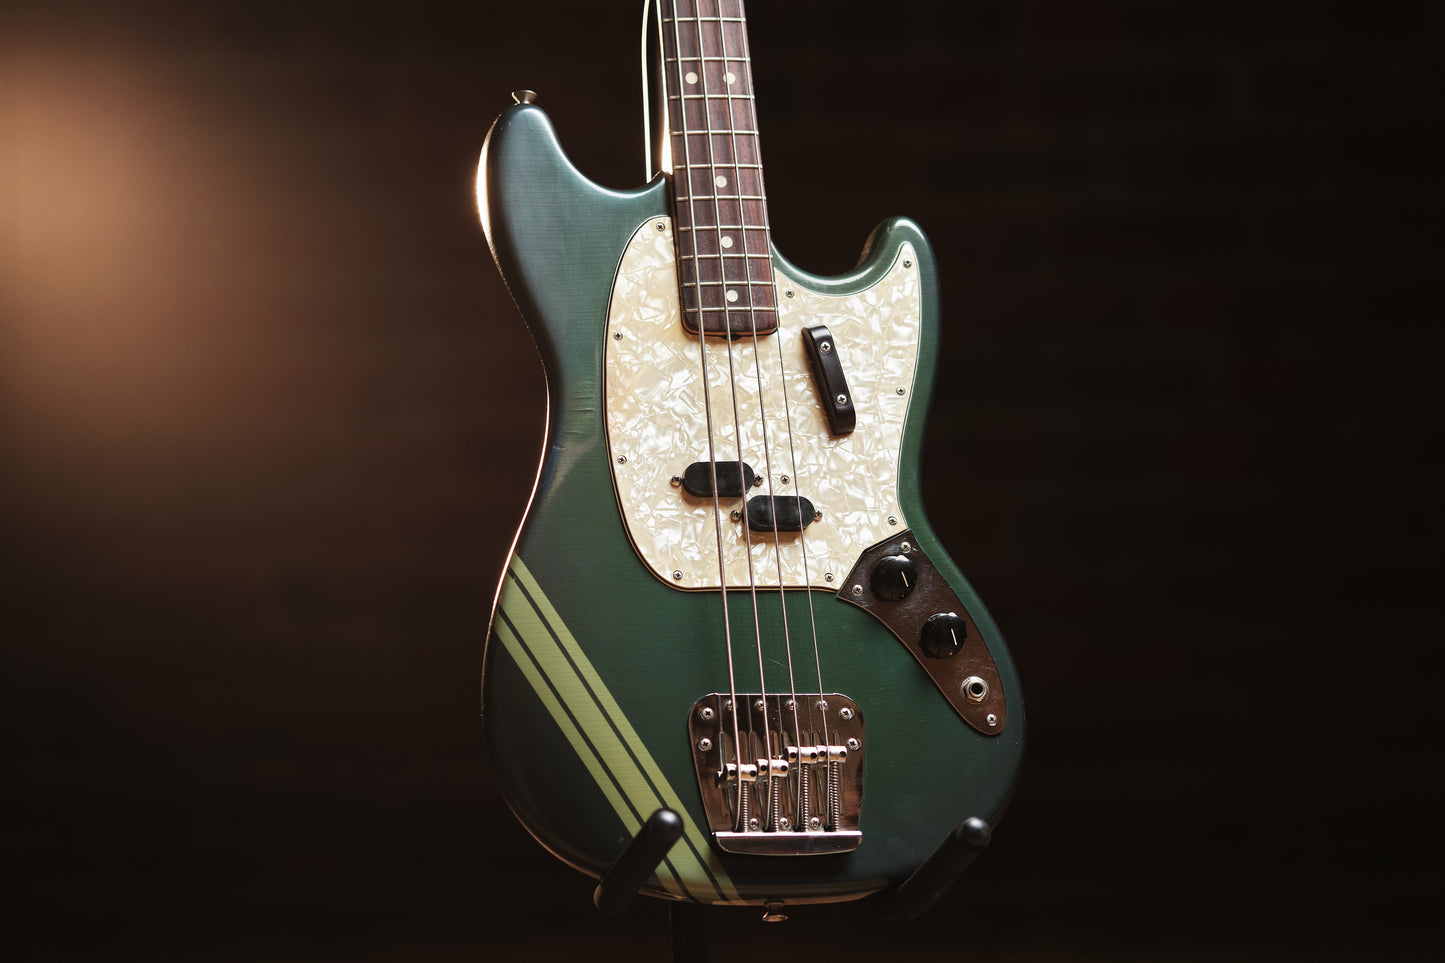 1971 Fender Mustang Bass